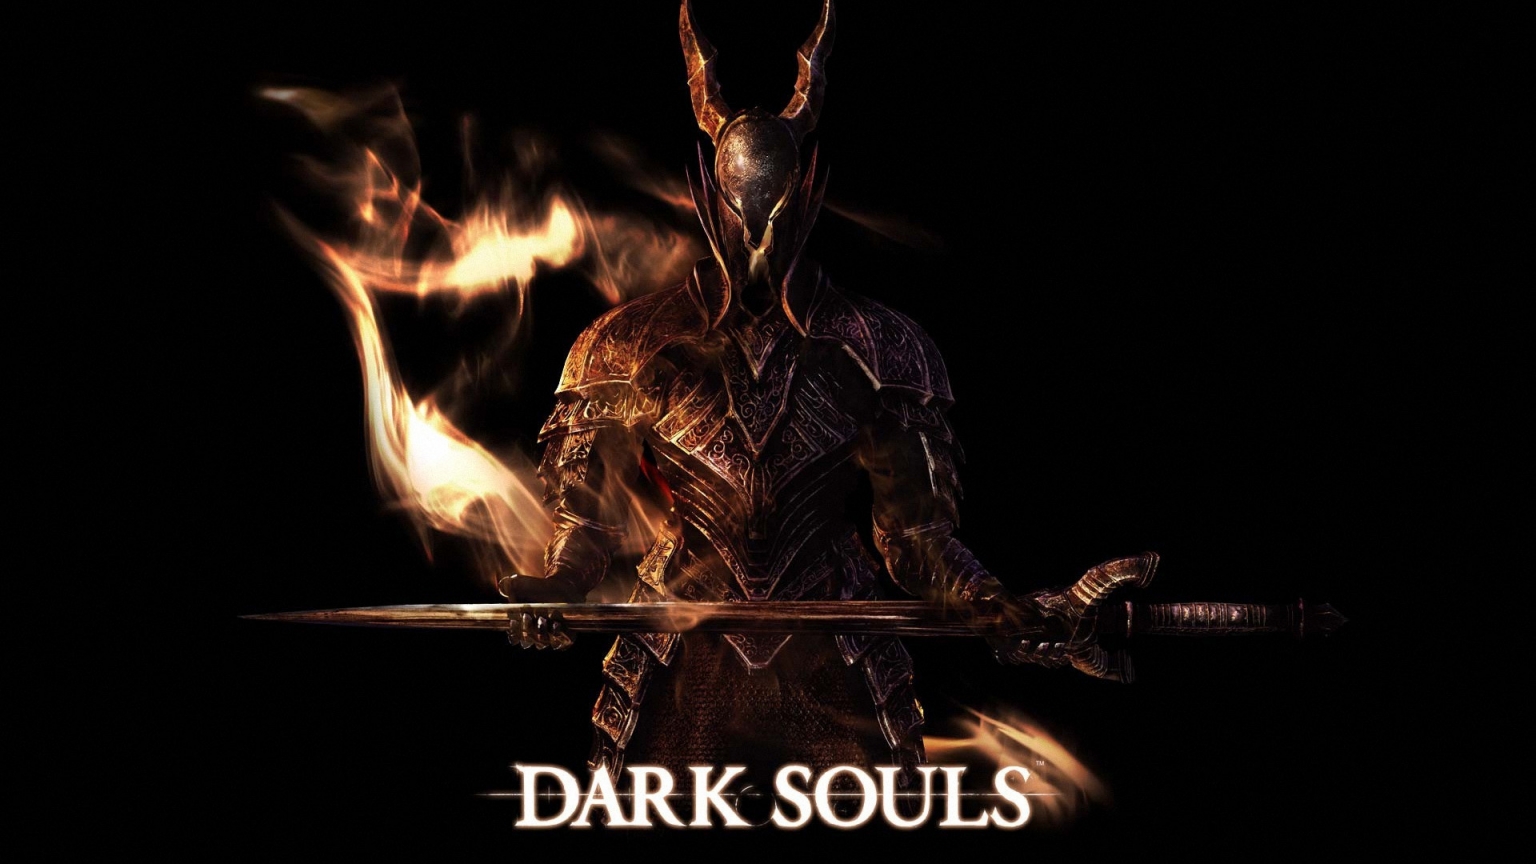 Dark Souls Art for 1536 x 864 HDTV resolution